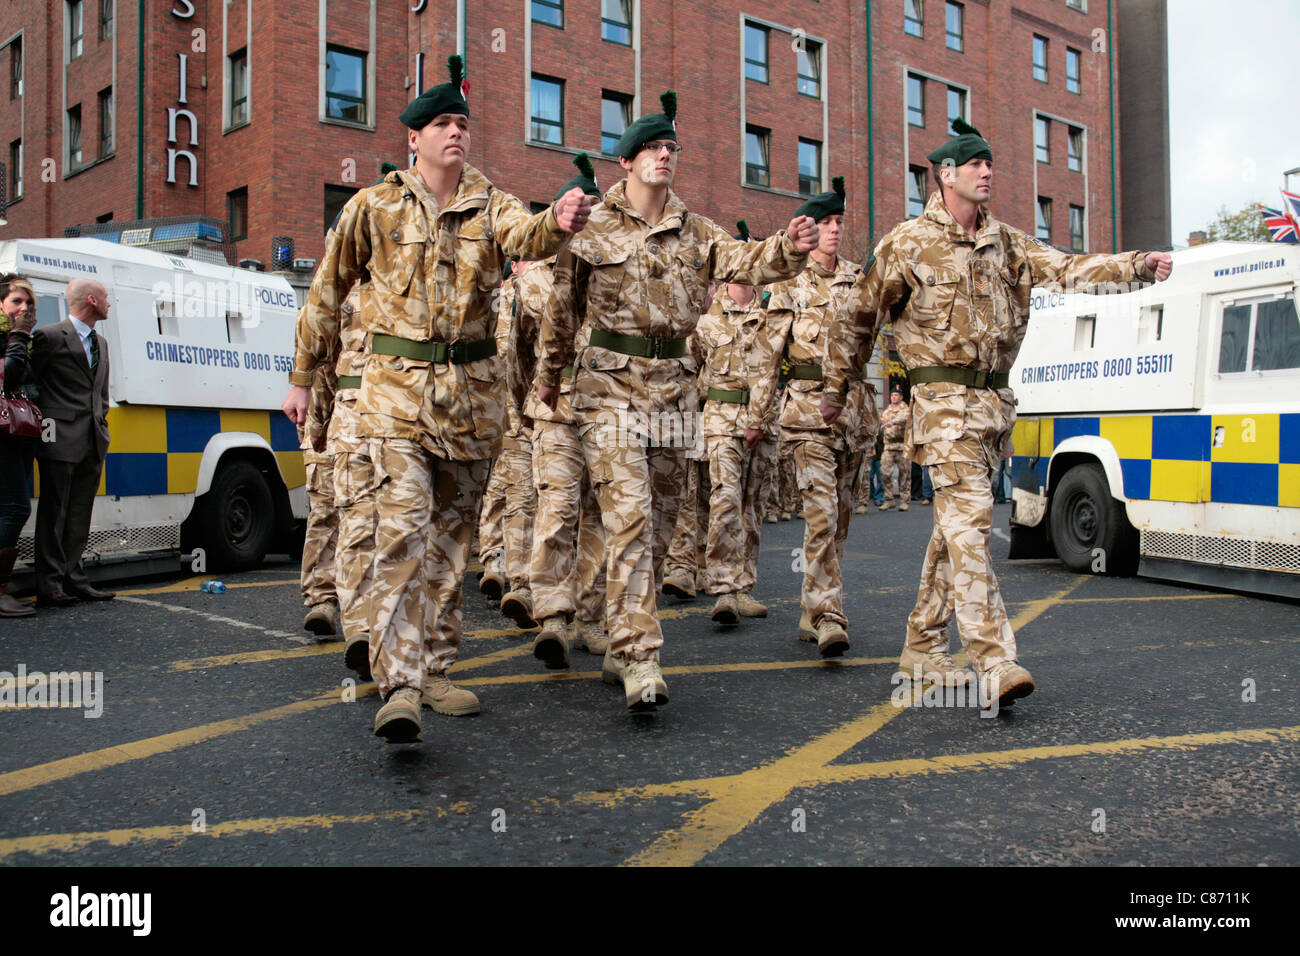 Soldaten des Royal Irish Regiment marschieren am 02. September 2008 in Belfast, Nordirland, zwischen Polizeilinien, die republikanische und loyalistische Demonstranten trennen. Die Parade, die relativ friedlich verlief, war für Truppen, die aus dem Irak und Afghanistan zurückkehrten Stockfoto